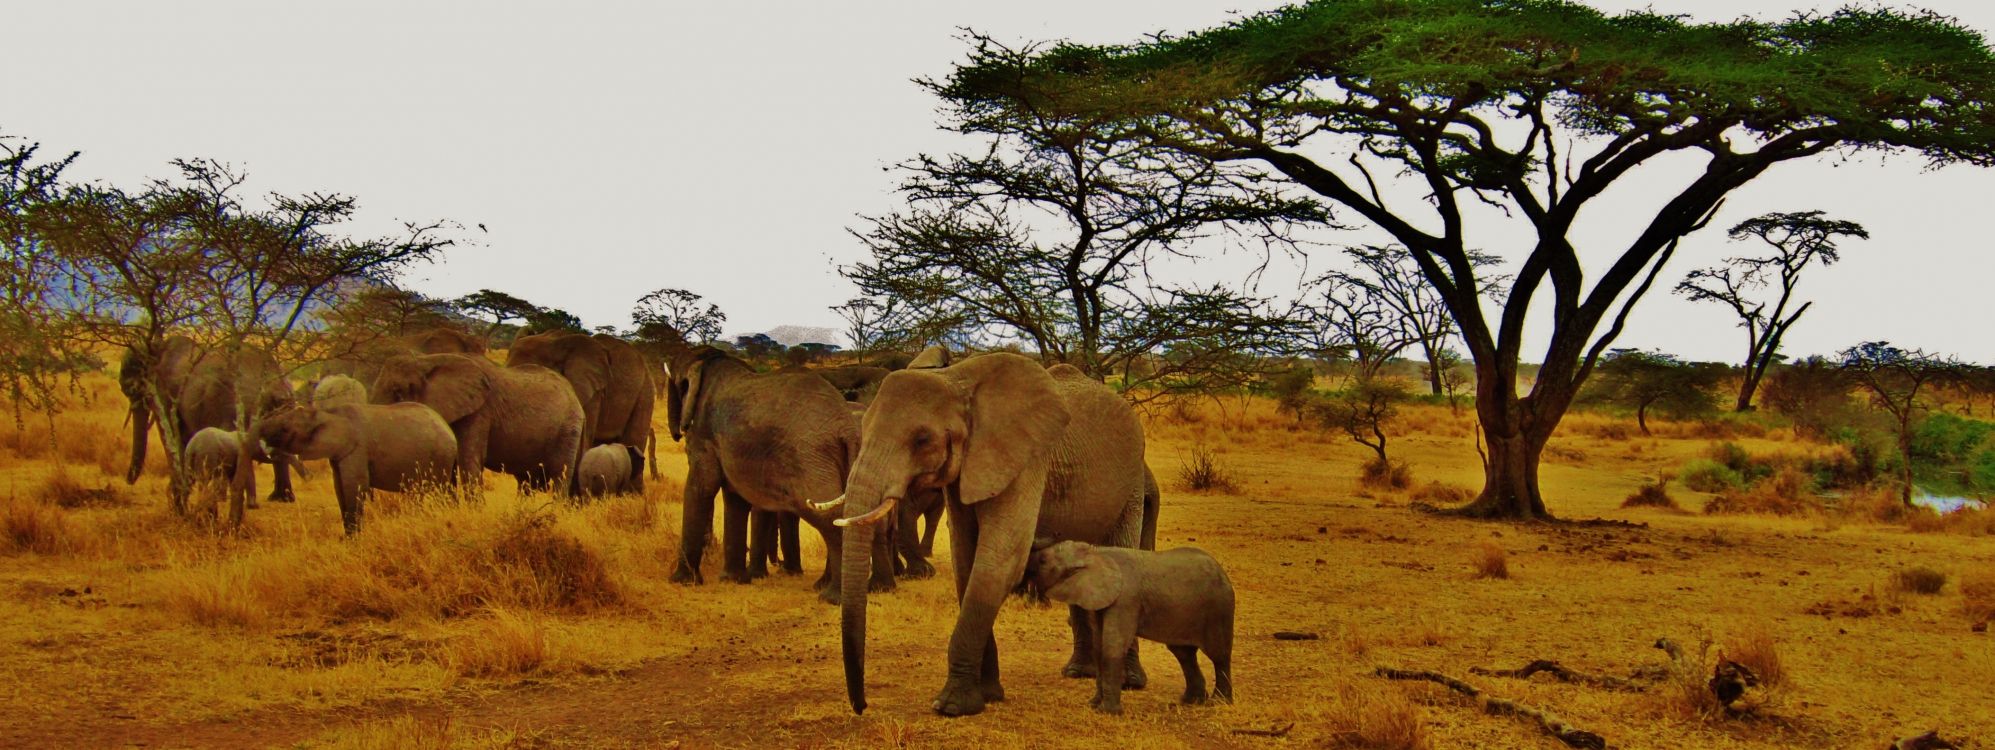 Safari, 野生动物, 陆地动物, 大象和猛犸象, 印度大象 壁纸 4212x1583 允许